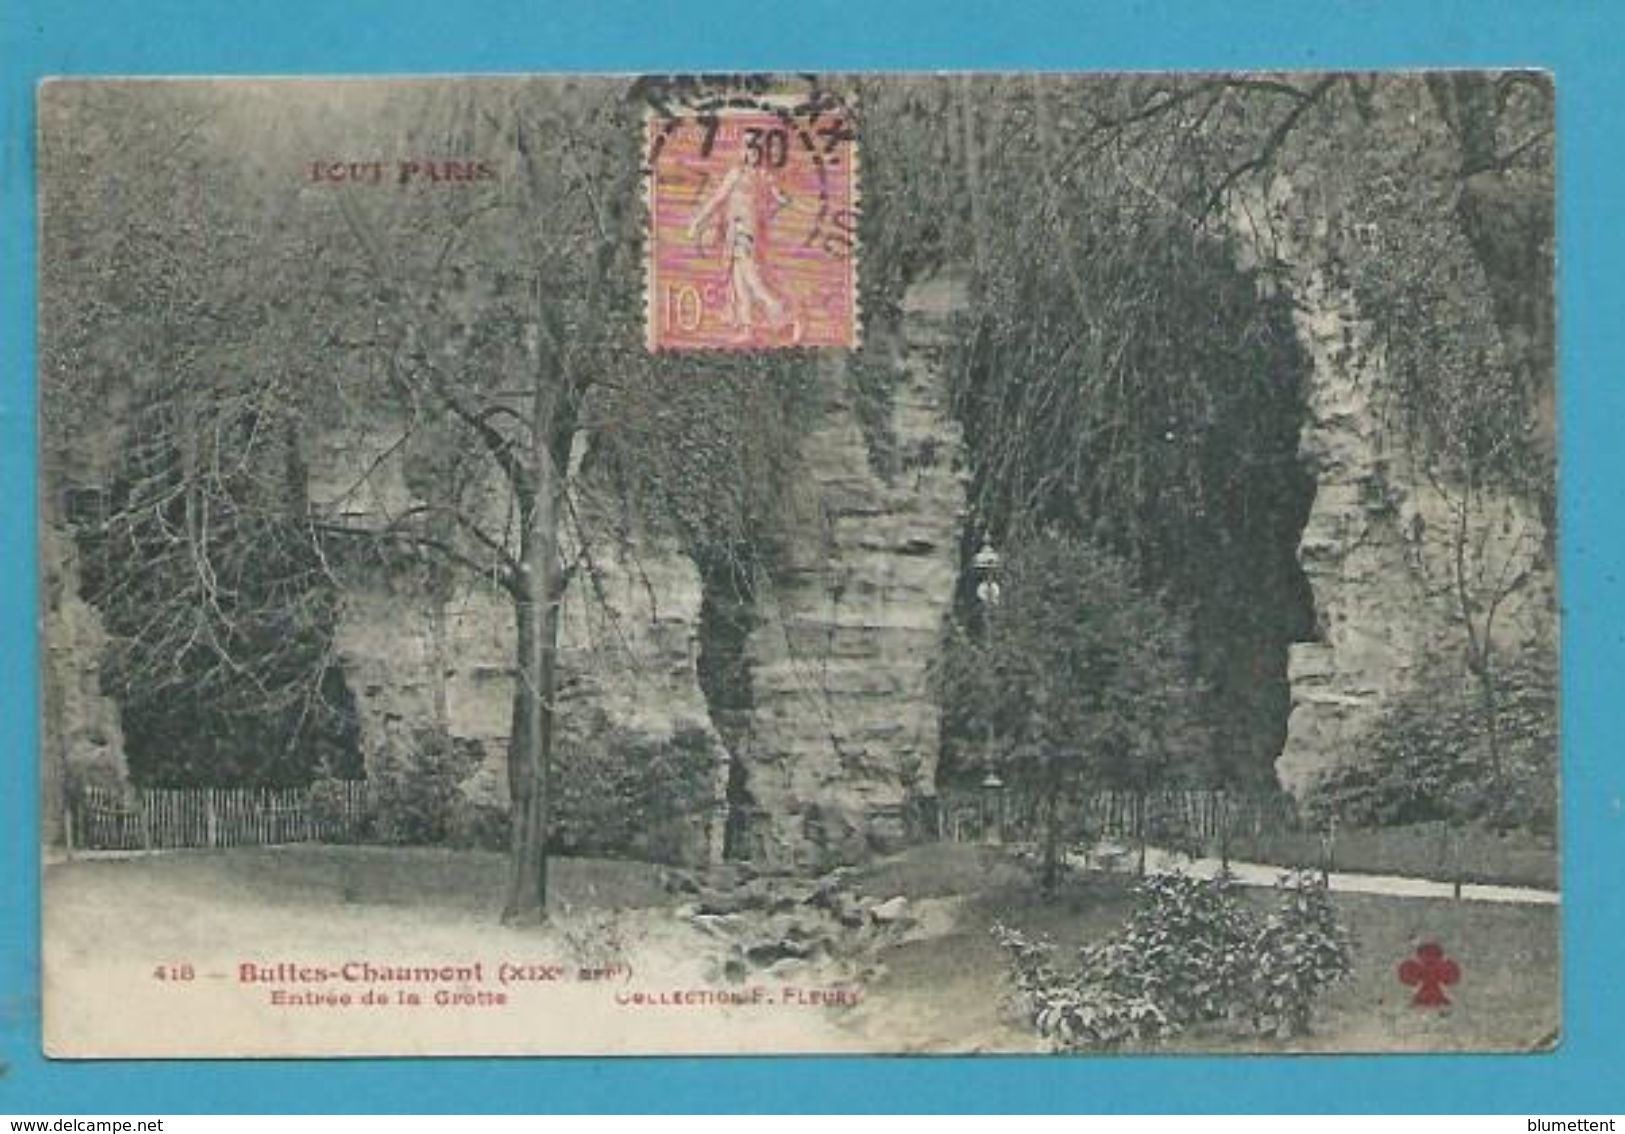 CPA TOUT PARIS 418 - Buttes Chaumont Entrée De La Grotte (XIXème Arrt.) Ed. FLEURY - Distrito: 19